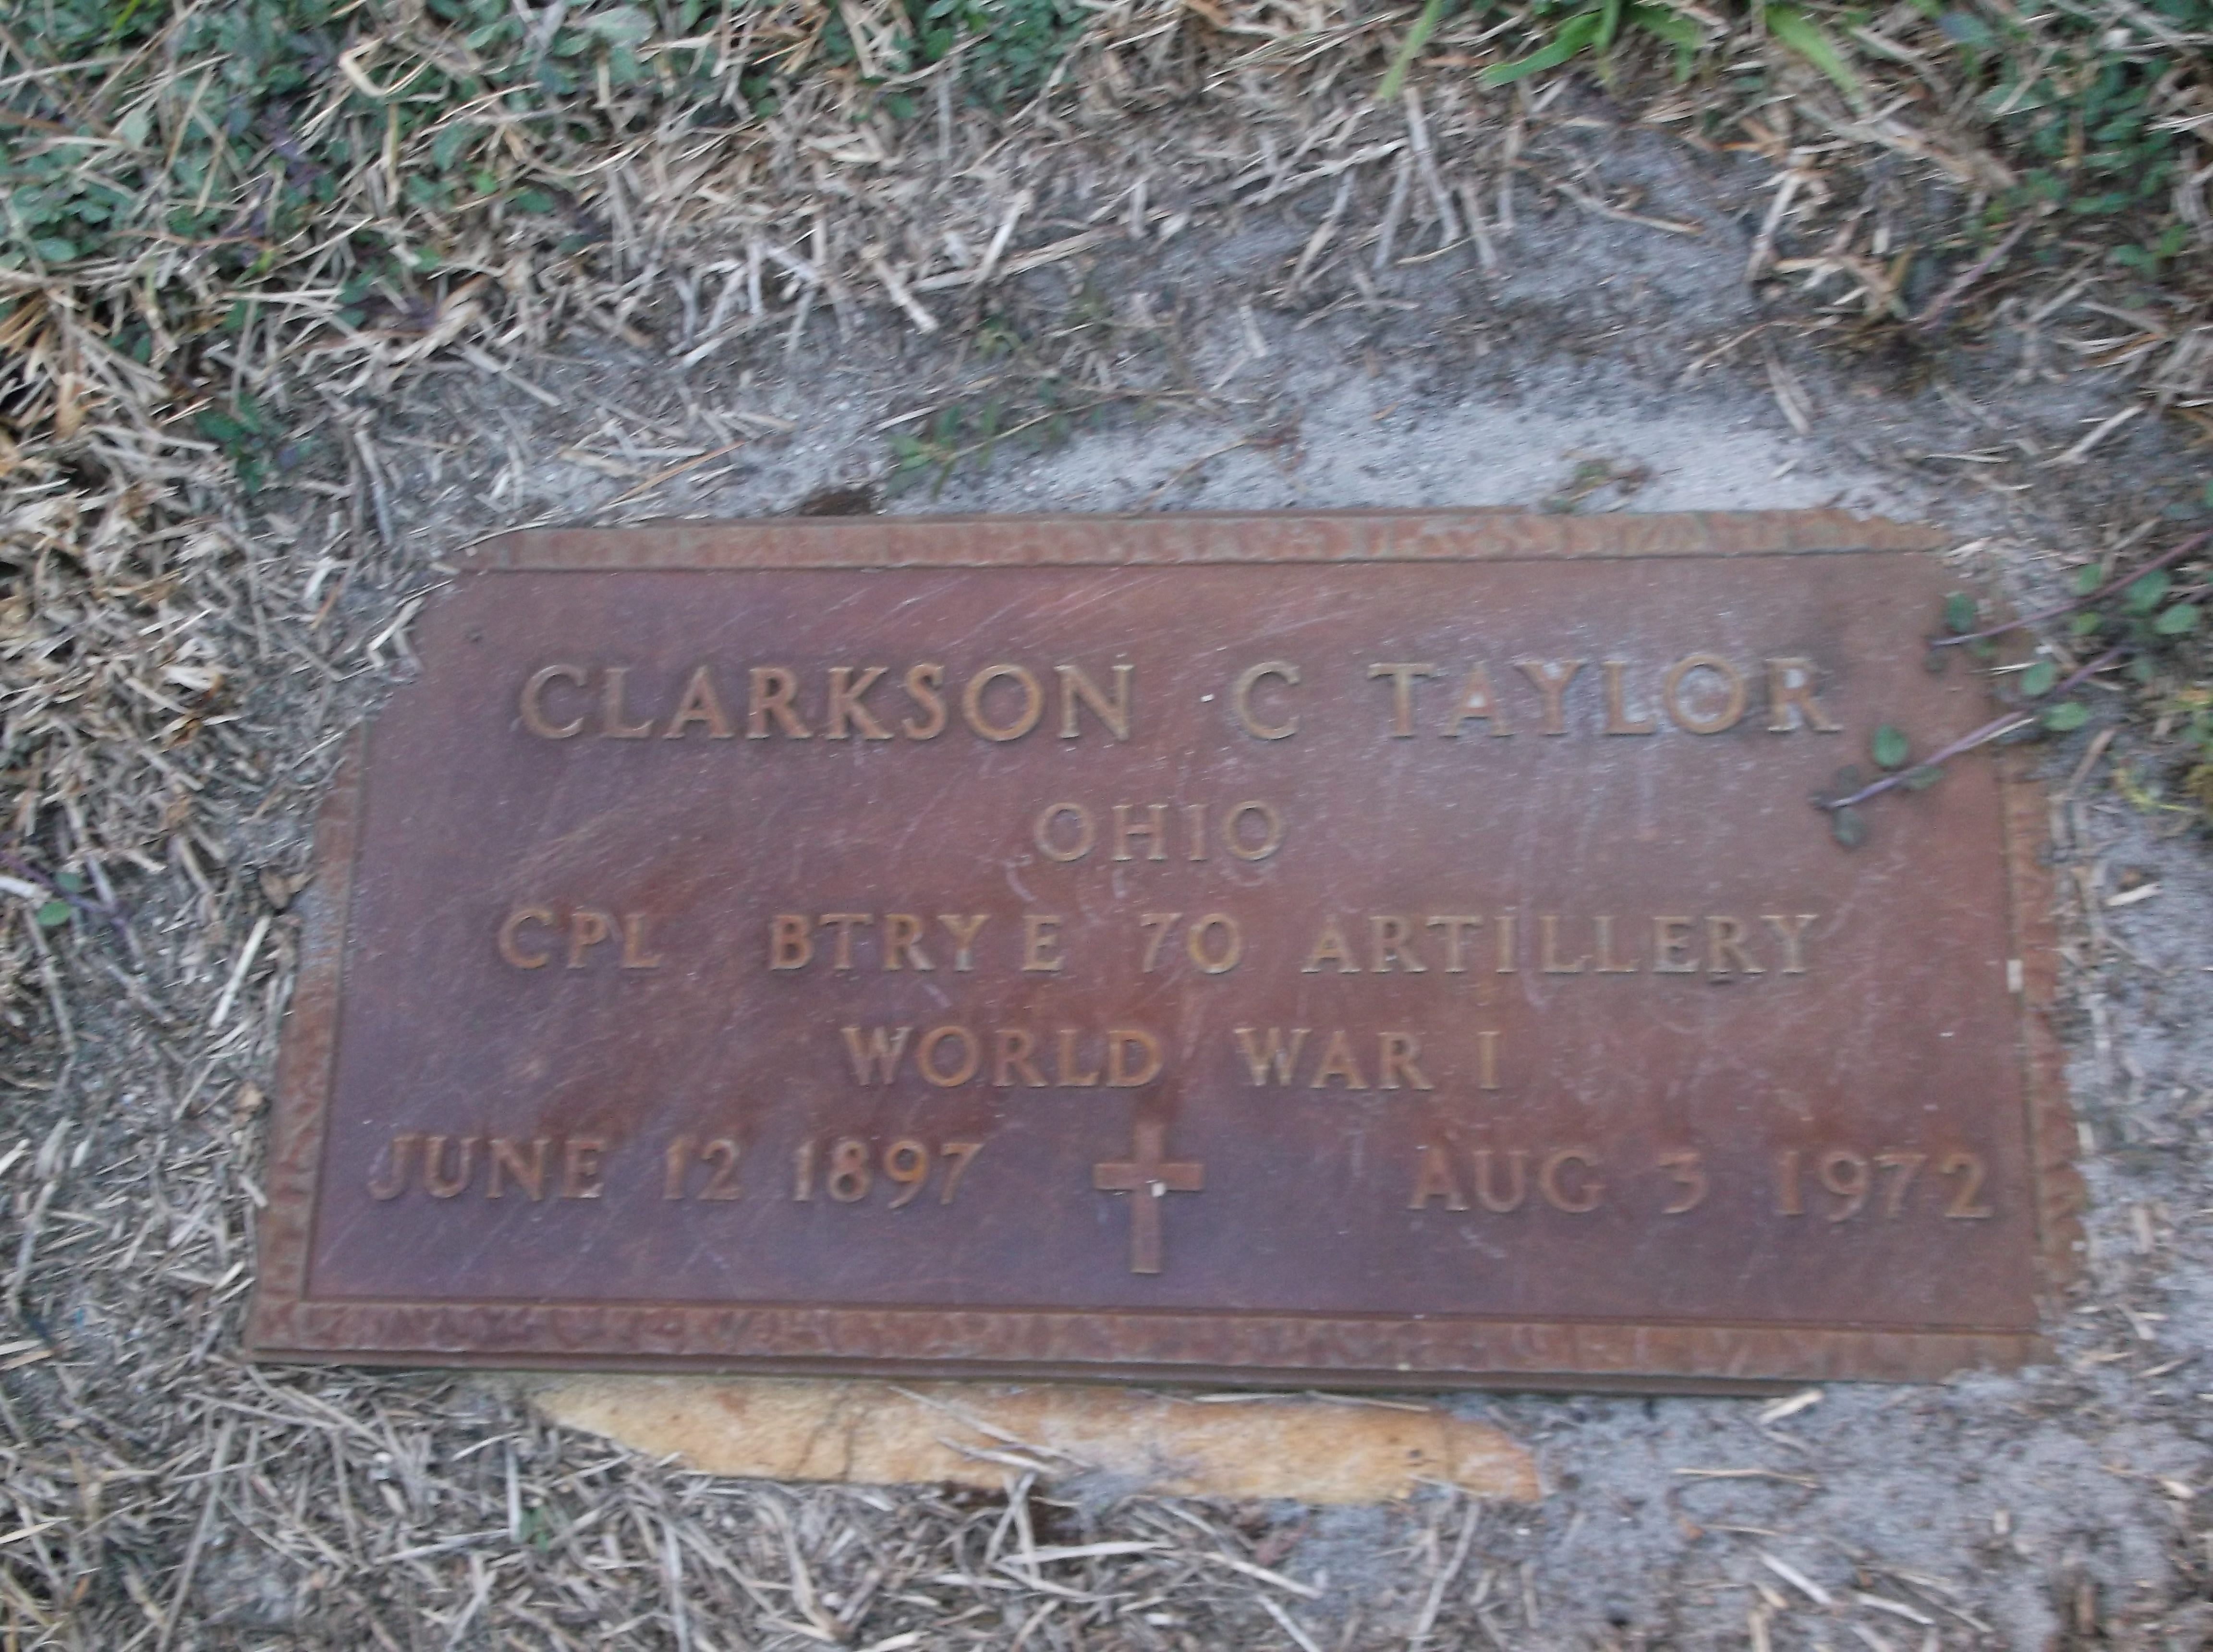 Clarkson C Taylor